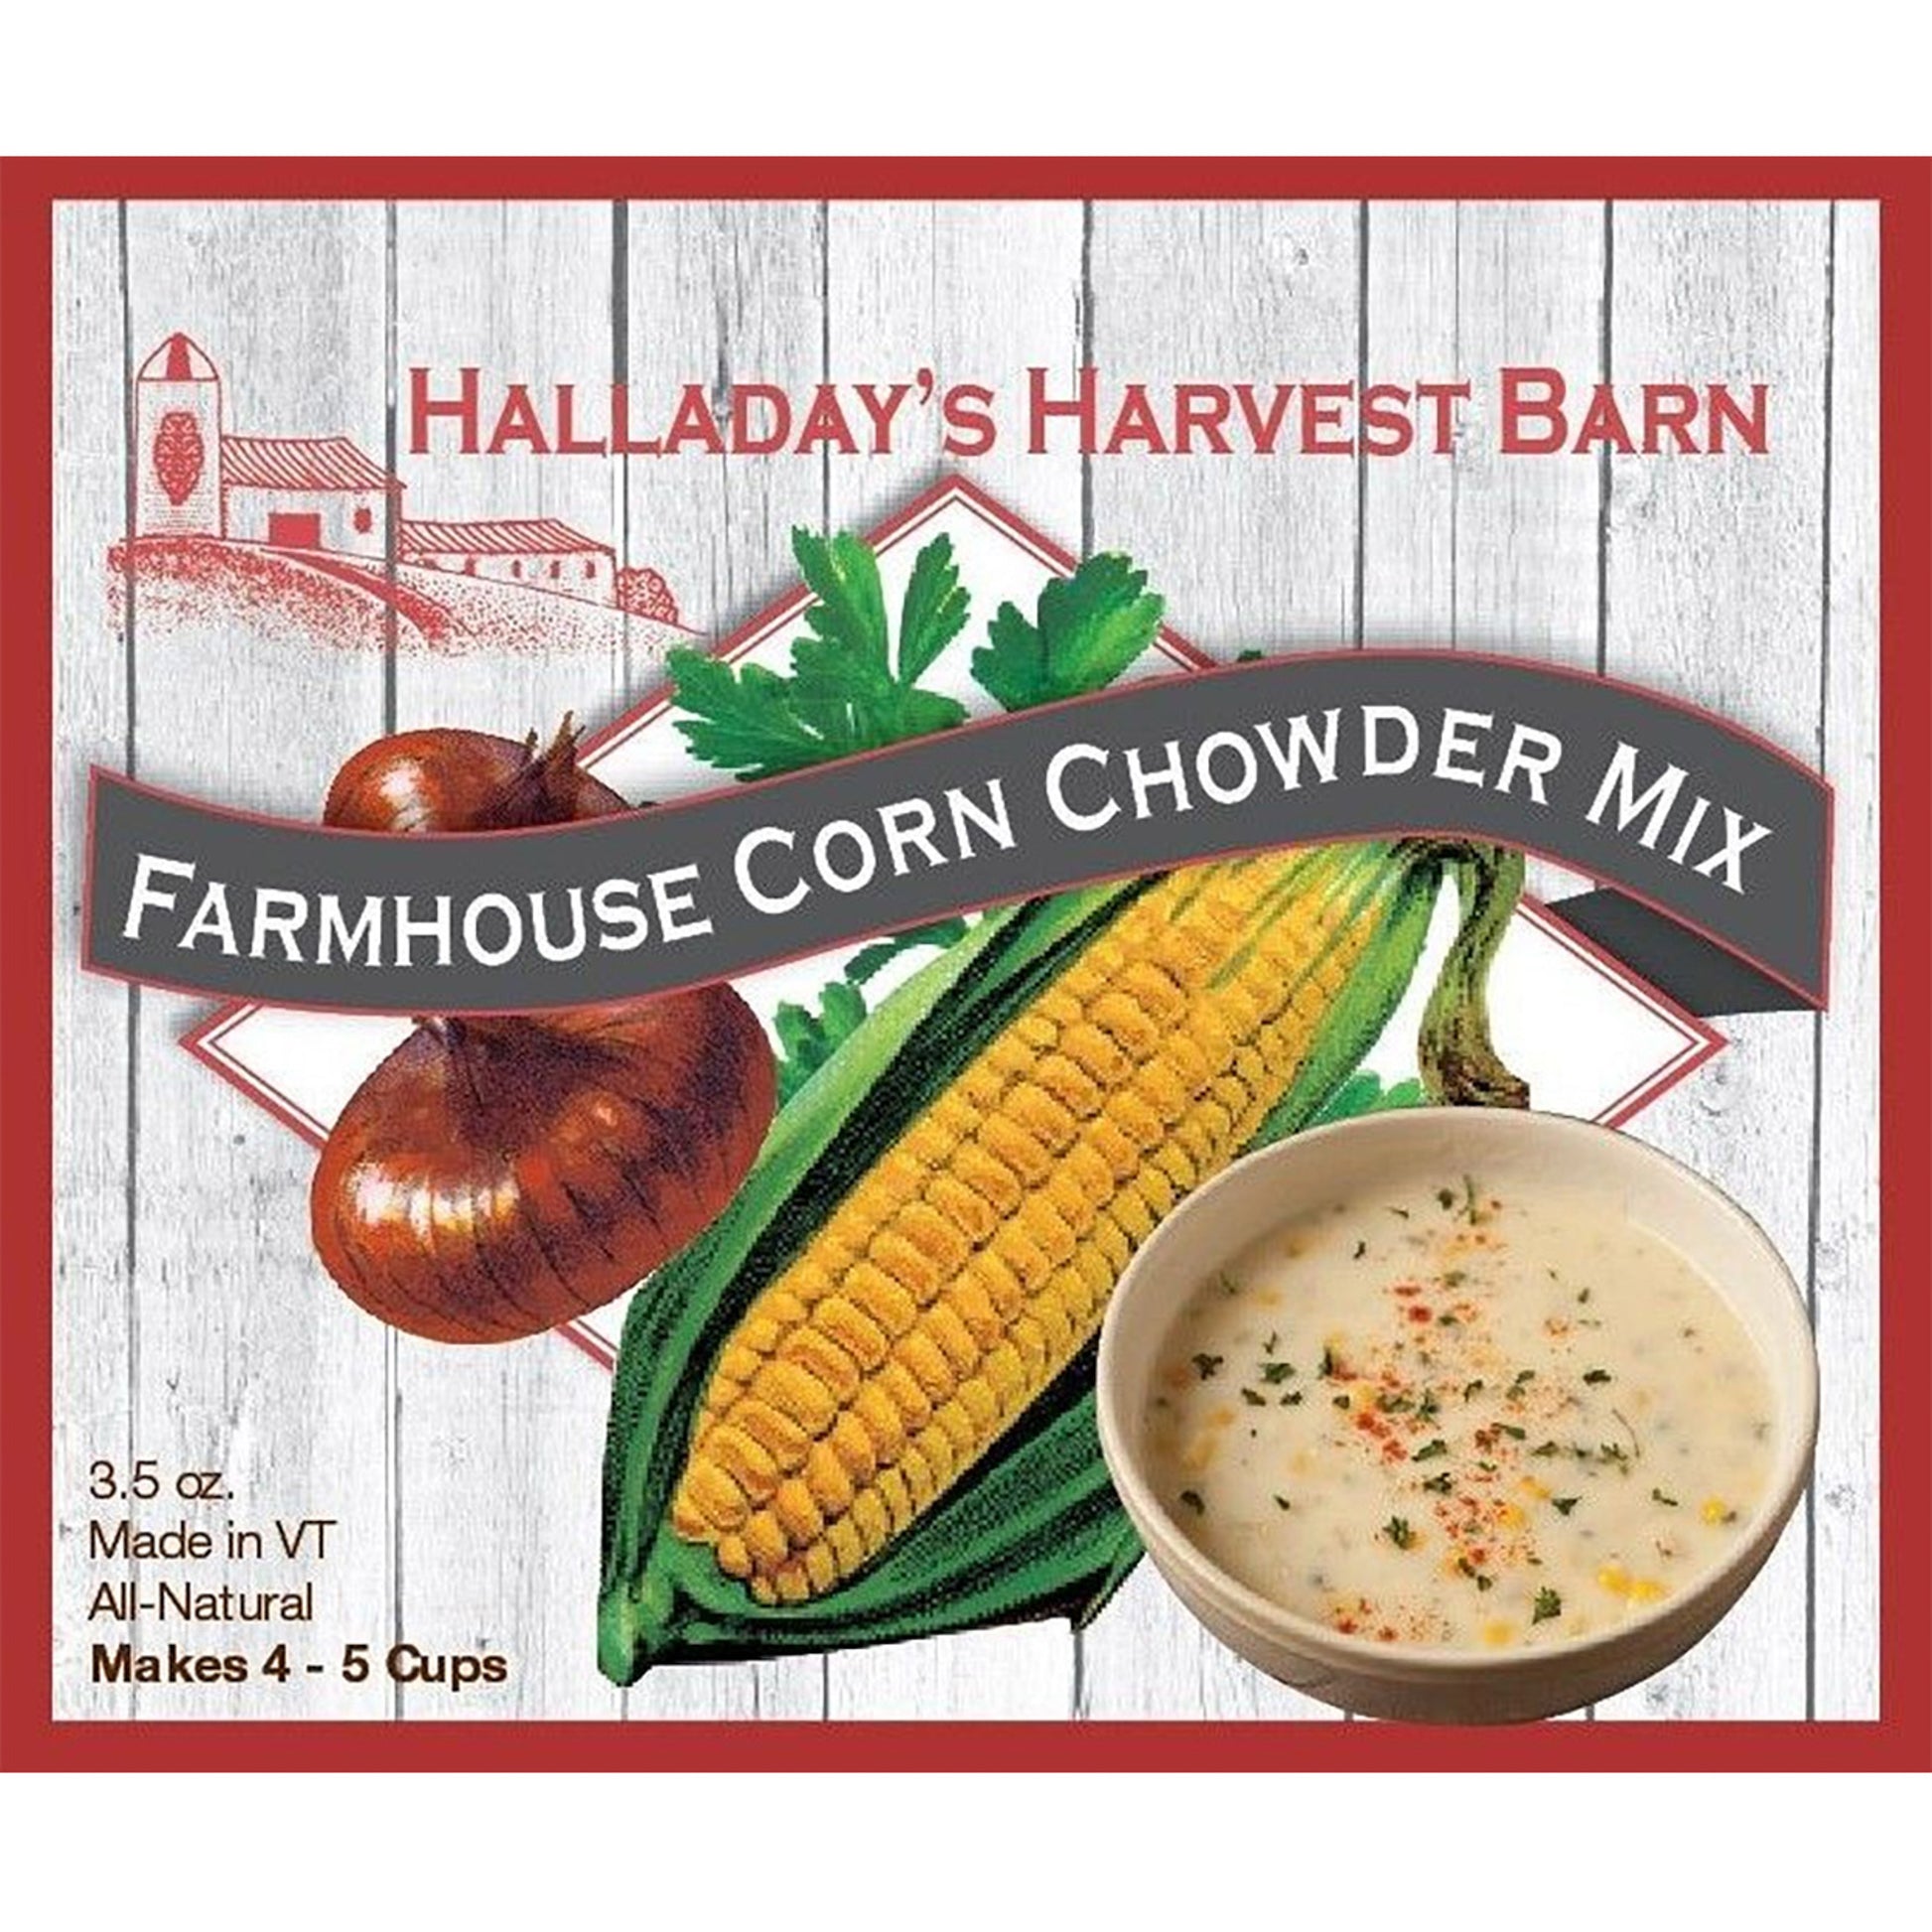 Farmhouse Corn Chowder